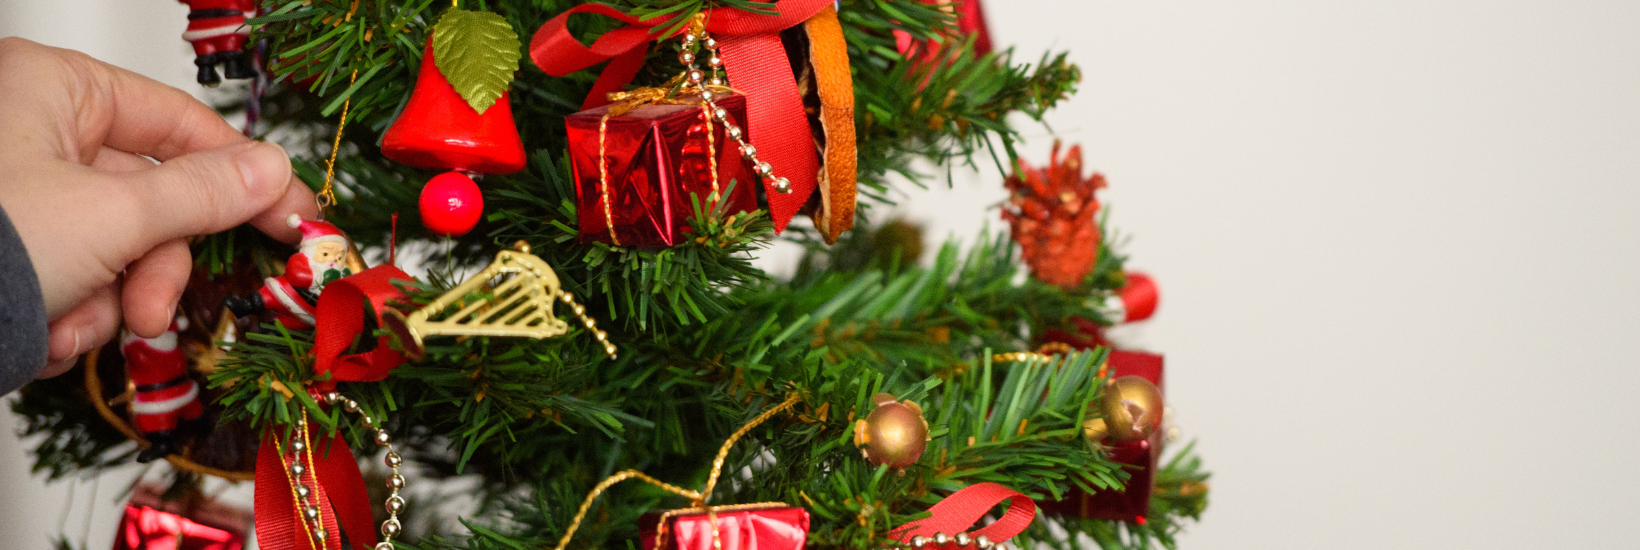 Engagez vos employés dans un concours de décoration d’arbres de Noël